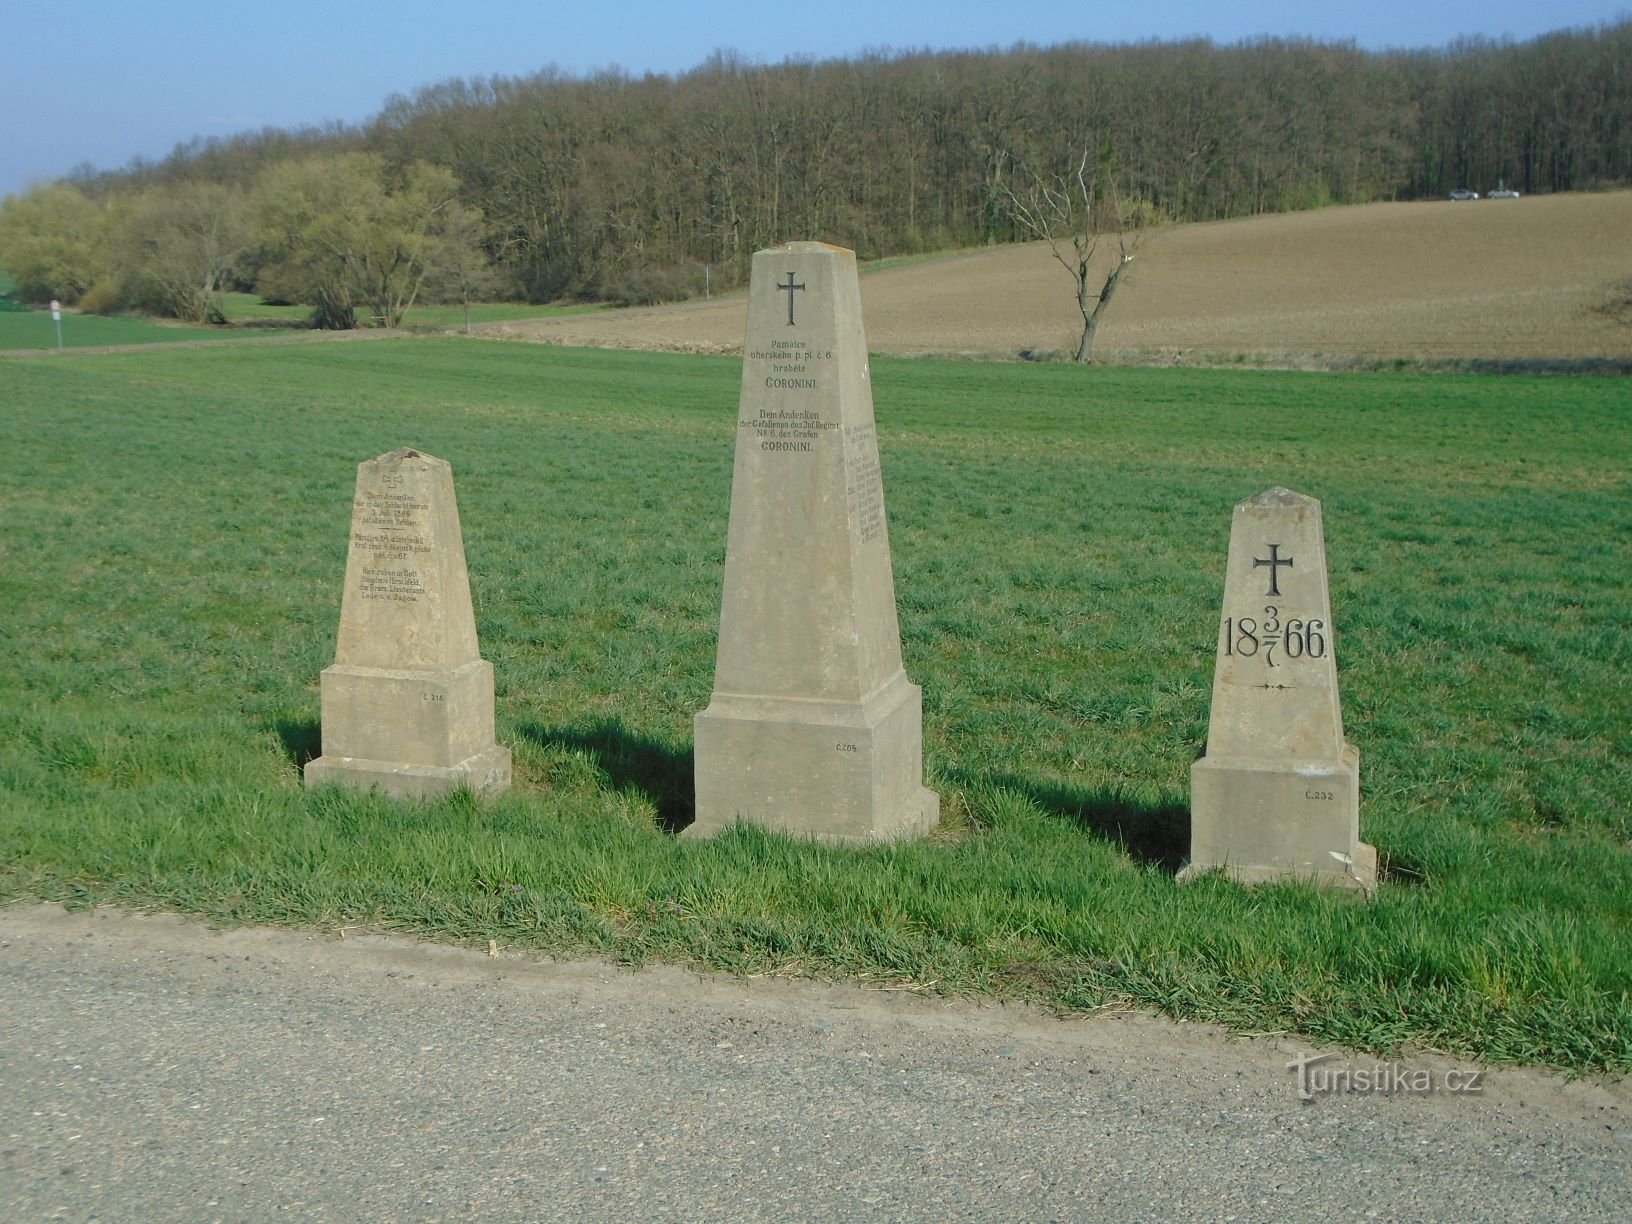 Monumente ale bătăliei din 1866 pe drum (Čistěves, 7.4.2019)